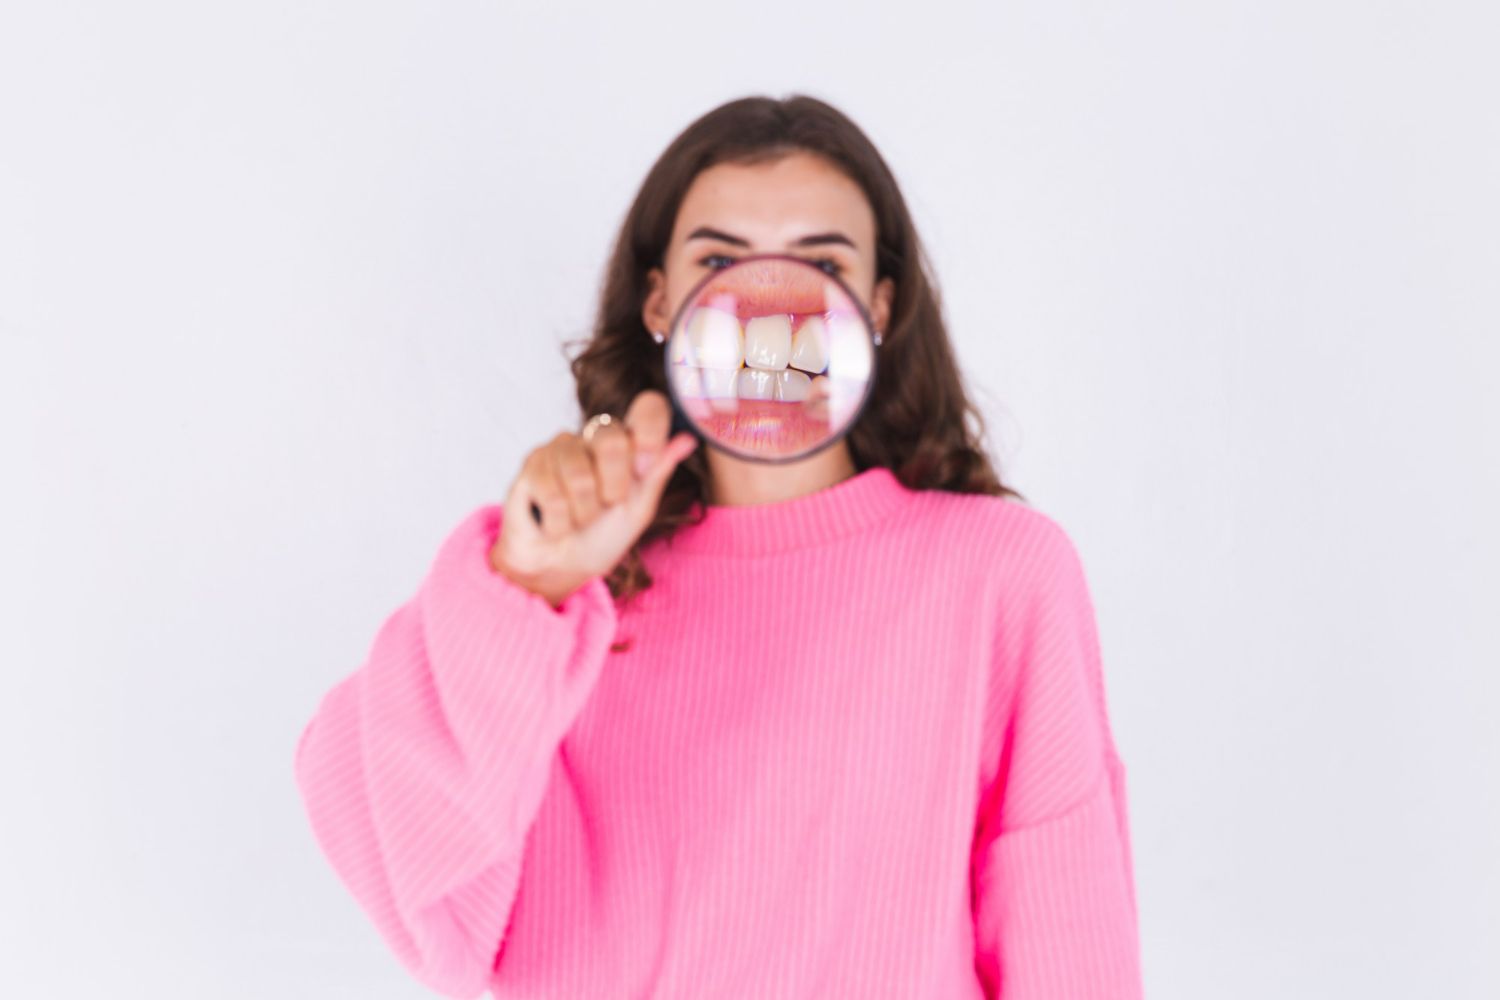 Doença periodontal: o que é e quais são os tipos? Entenda tudo desse assunto nessa leitura rápida